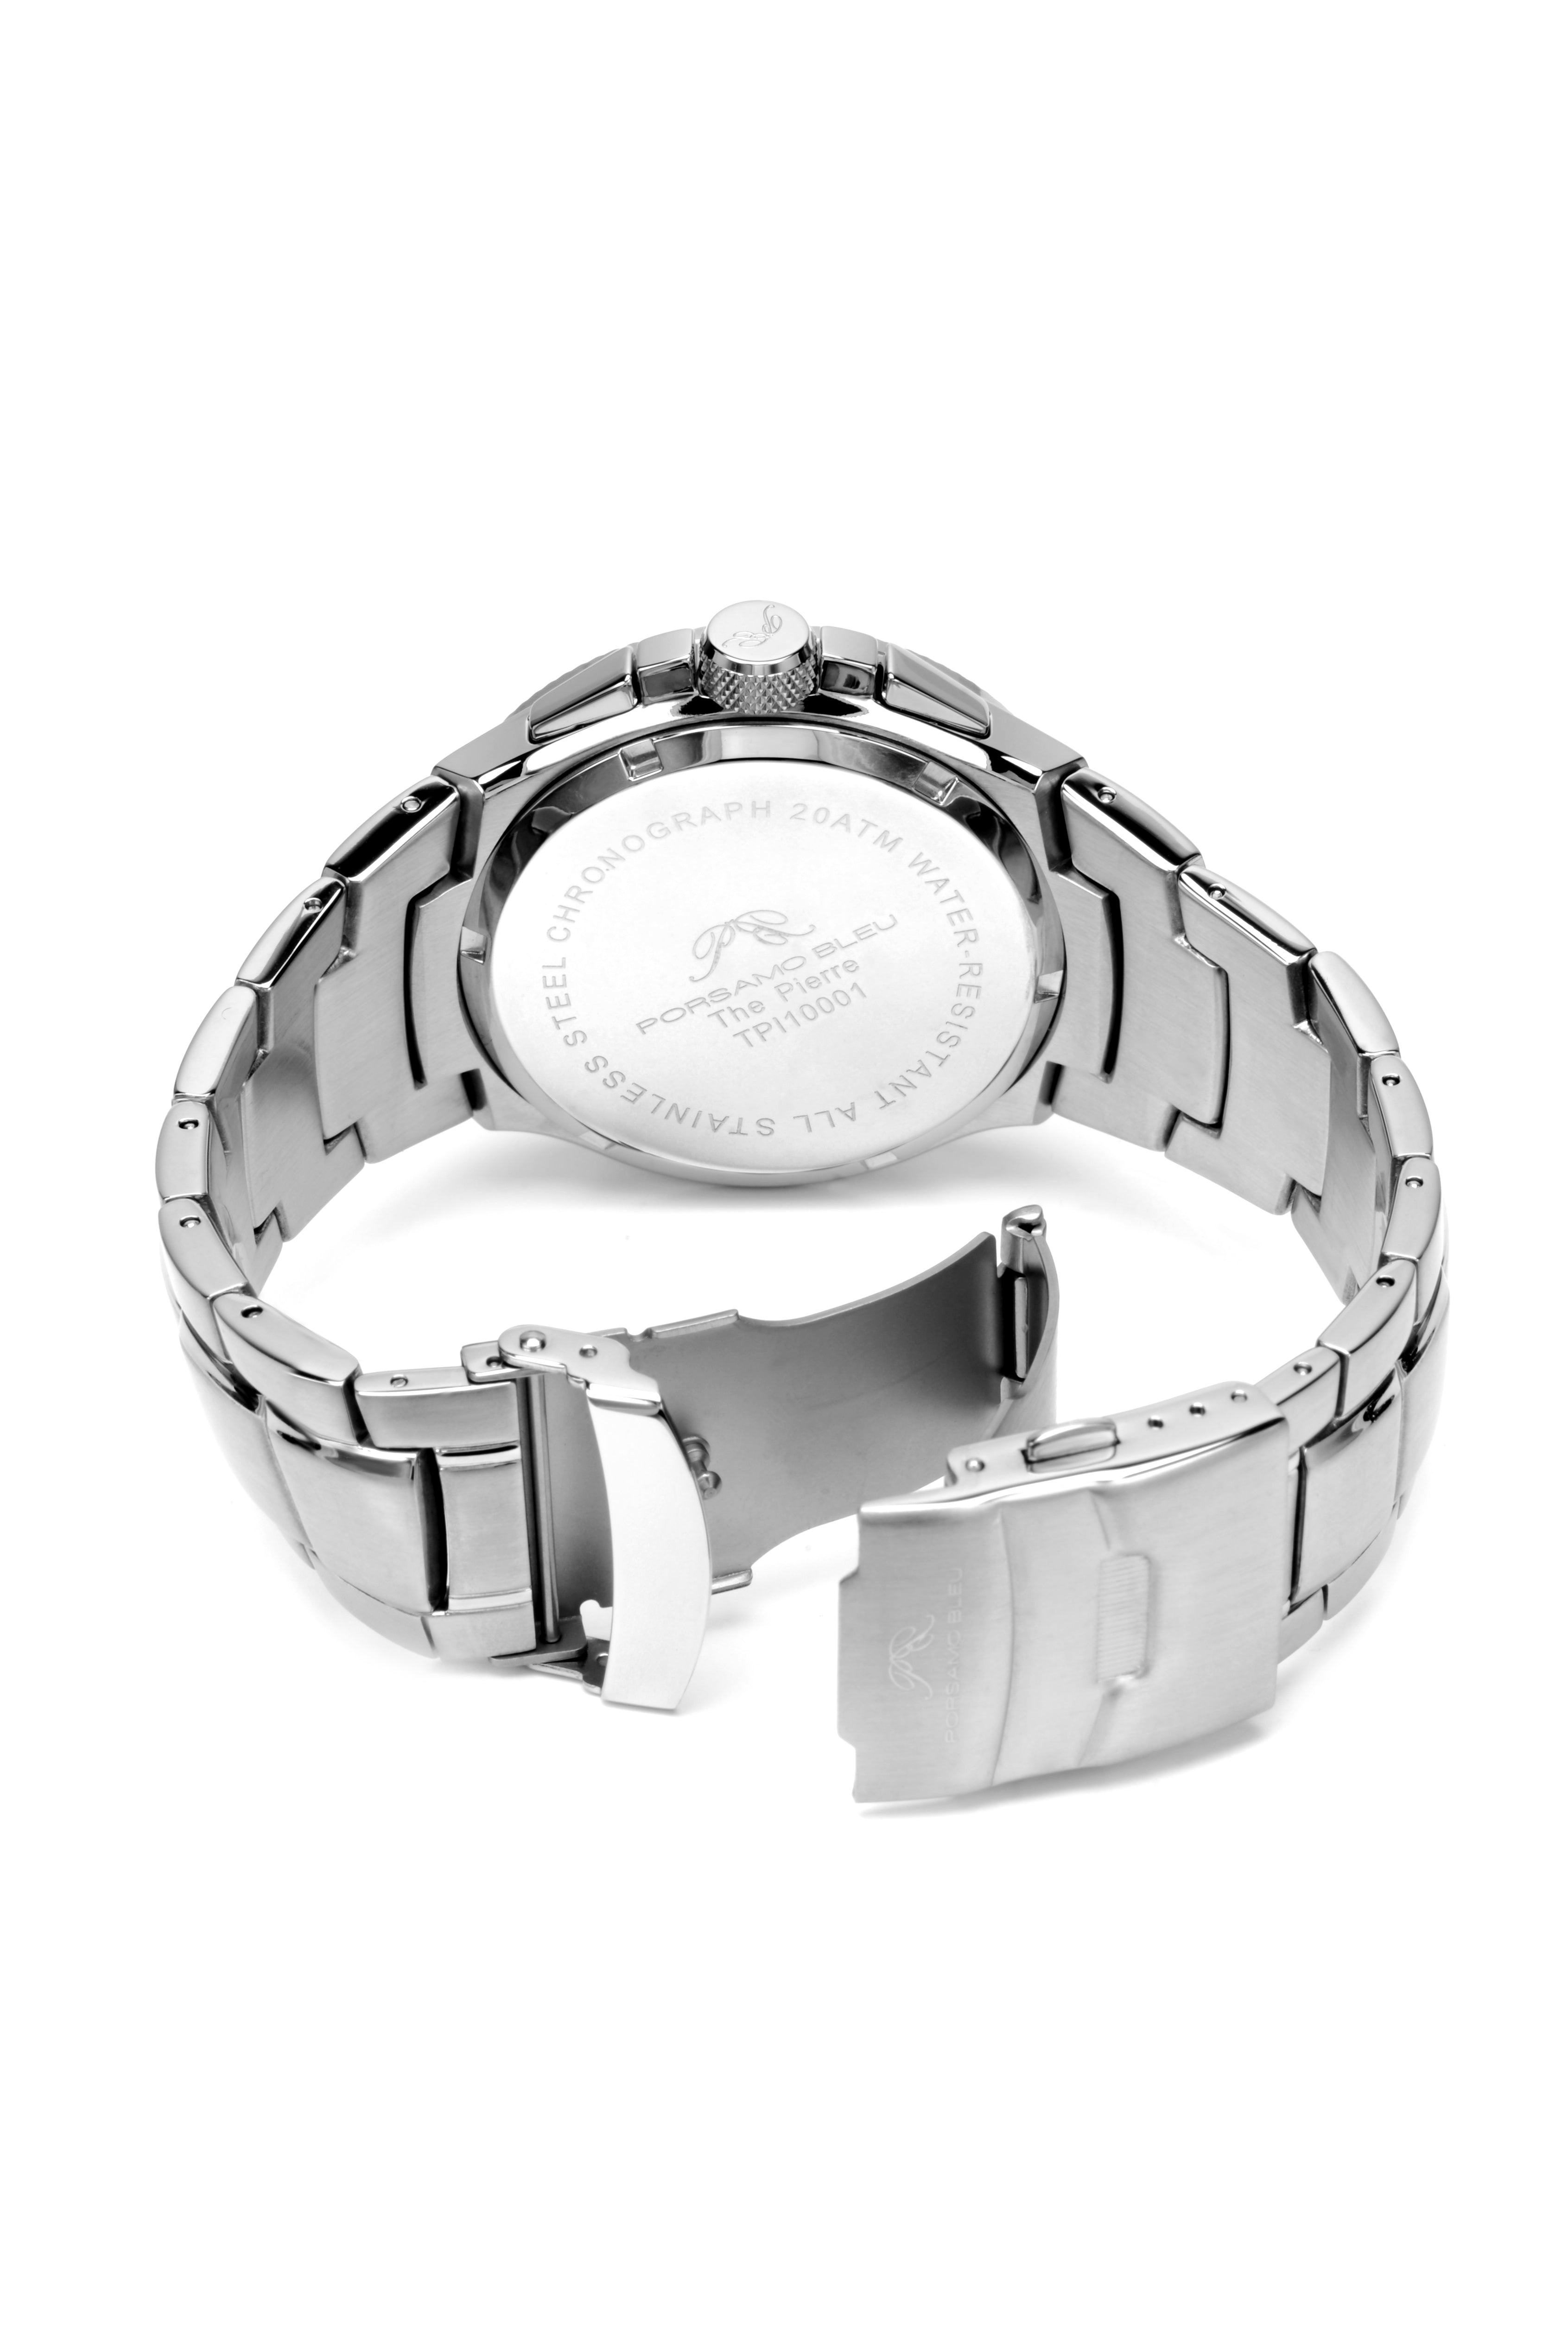 Porsamo Bleu Pierre luxury chronograph men's stainless steel watch, silver, white 251APIS